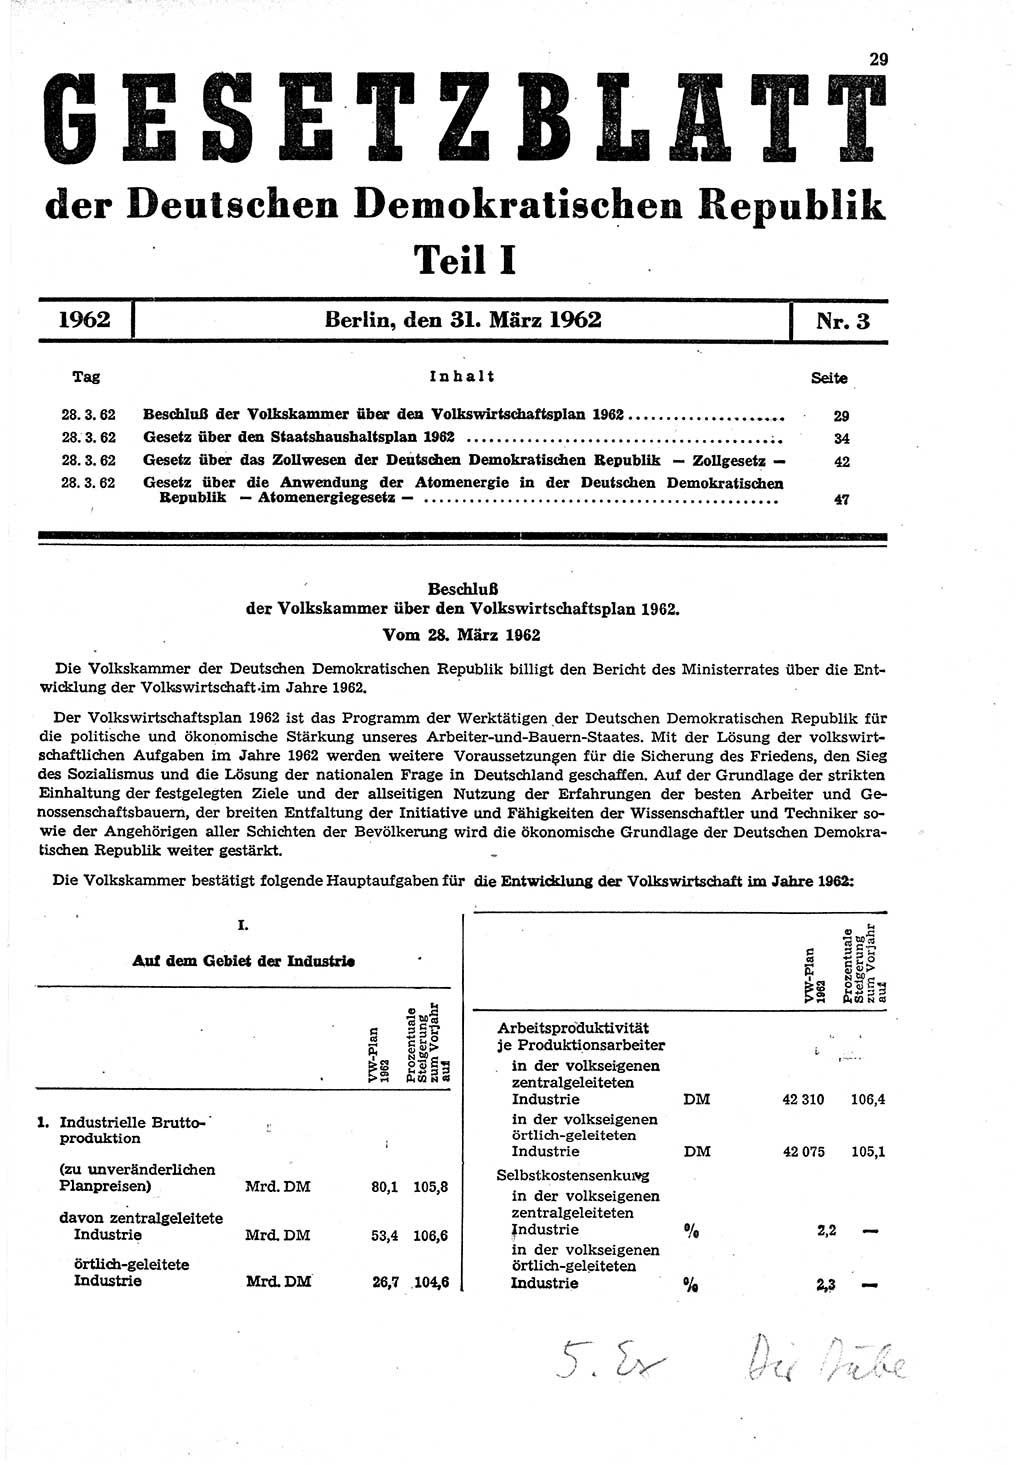 Gesetzblatt (GBl.) der Deutschen Demokratischen Republik (DDR) Teil Ⅰ 1962, Seite 29 (GBl. DDR Ⅰ 1962, S. 29)